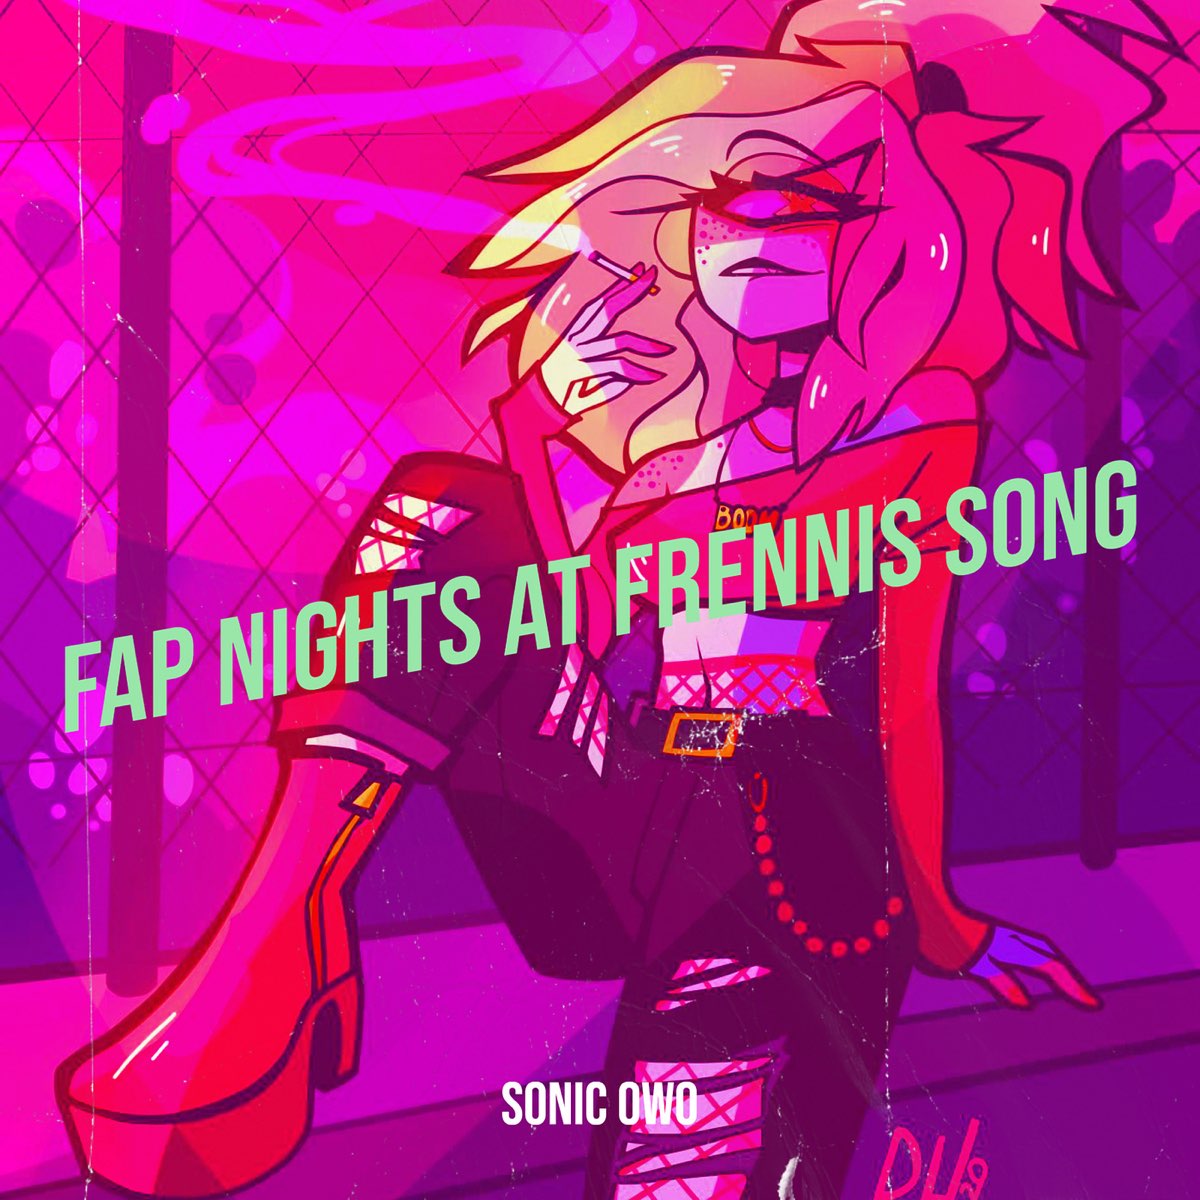 Fap Nights at frennis. Fap Nights at frennis 0.1.5. Fap Nights at frennis авы. Fap Nights at frennis читы. Fap nights at frenni 0.2 3